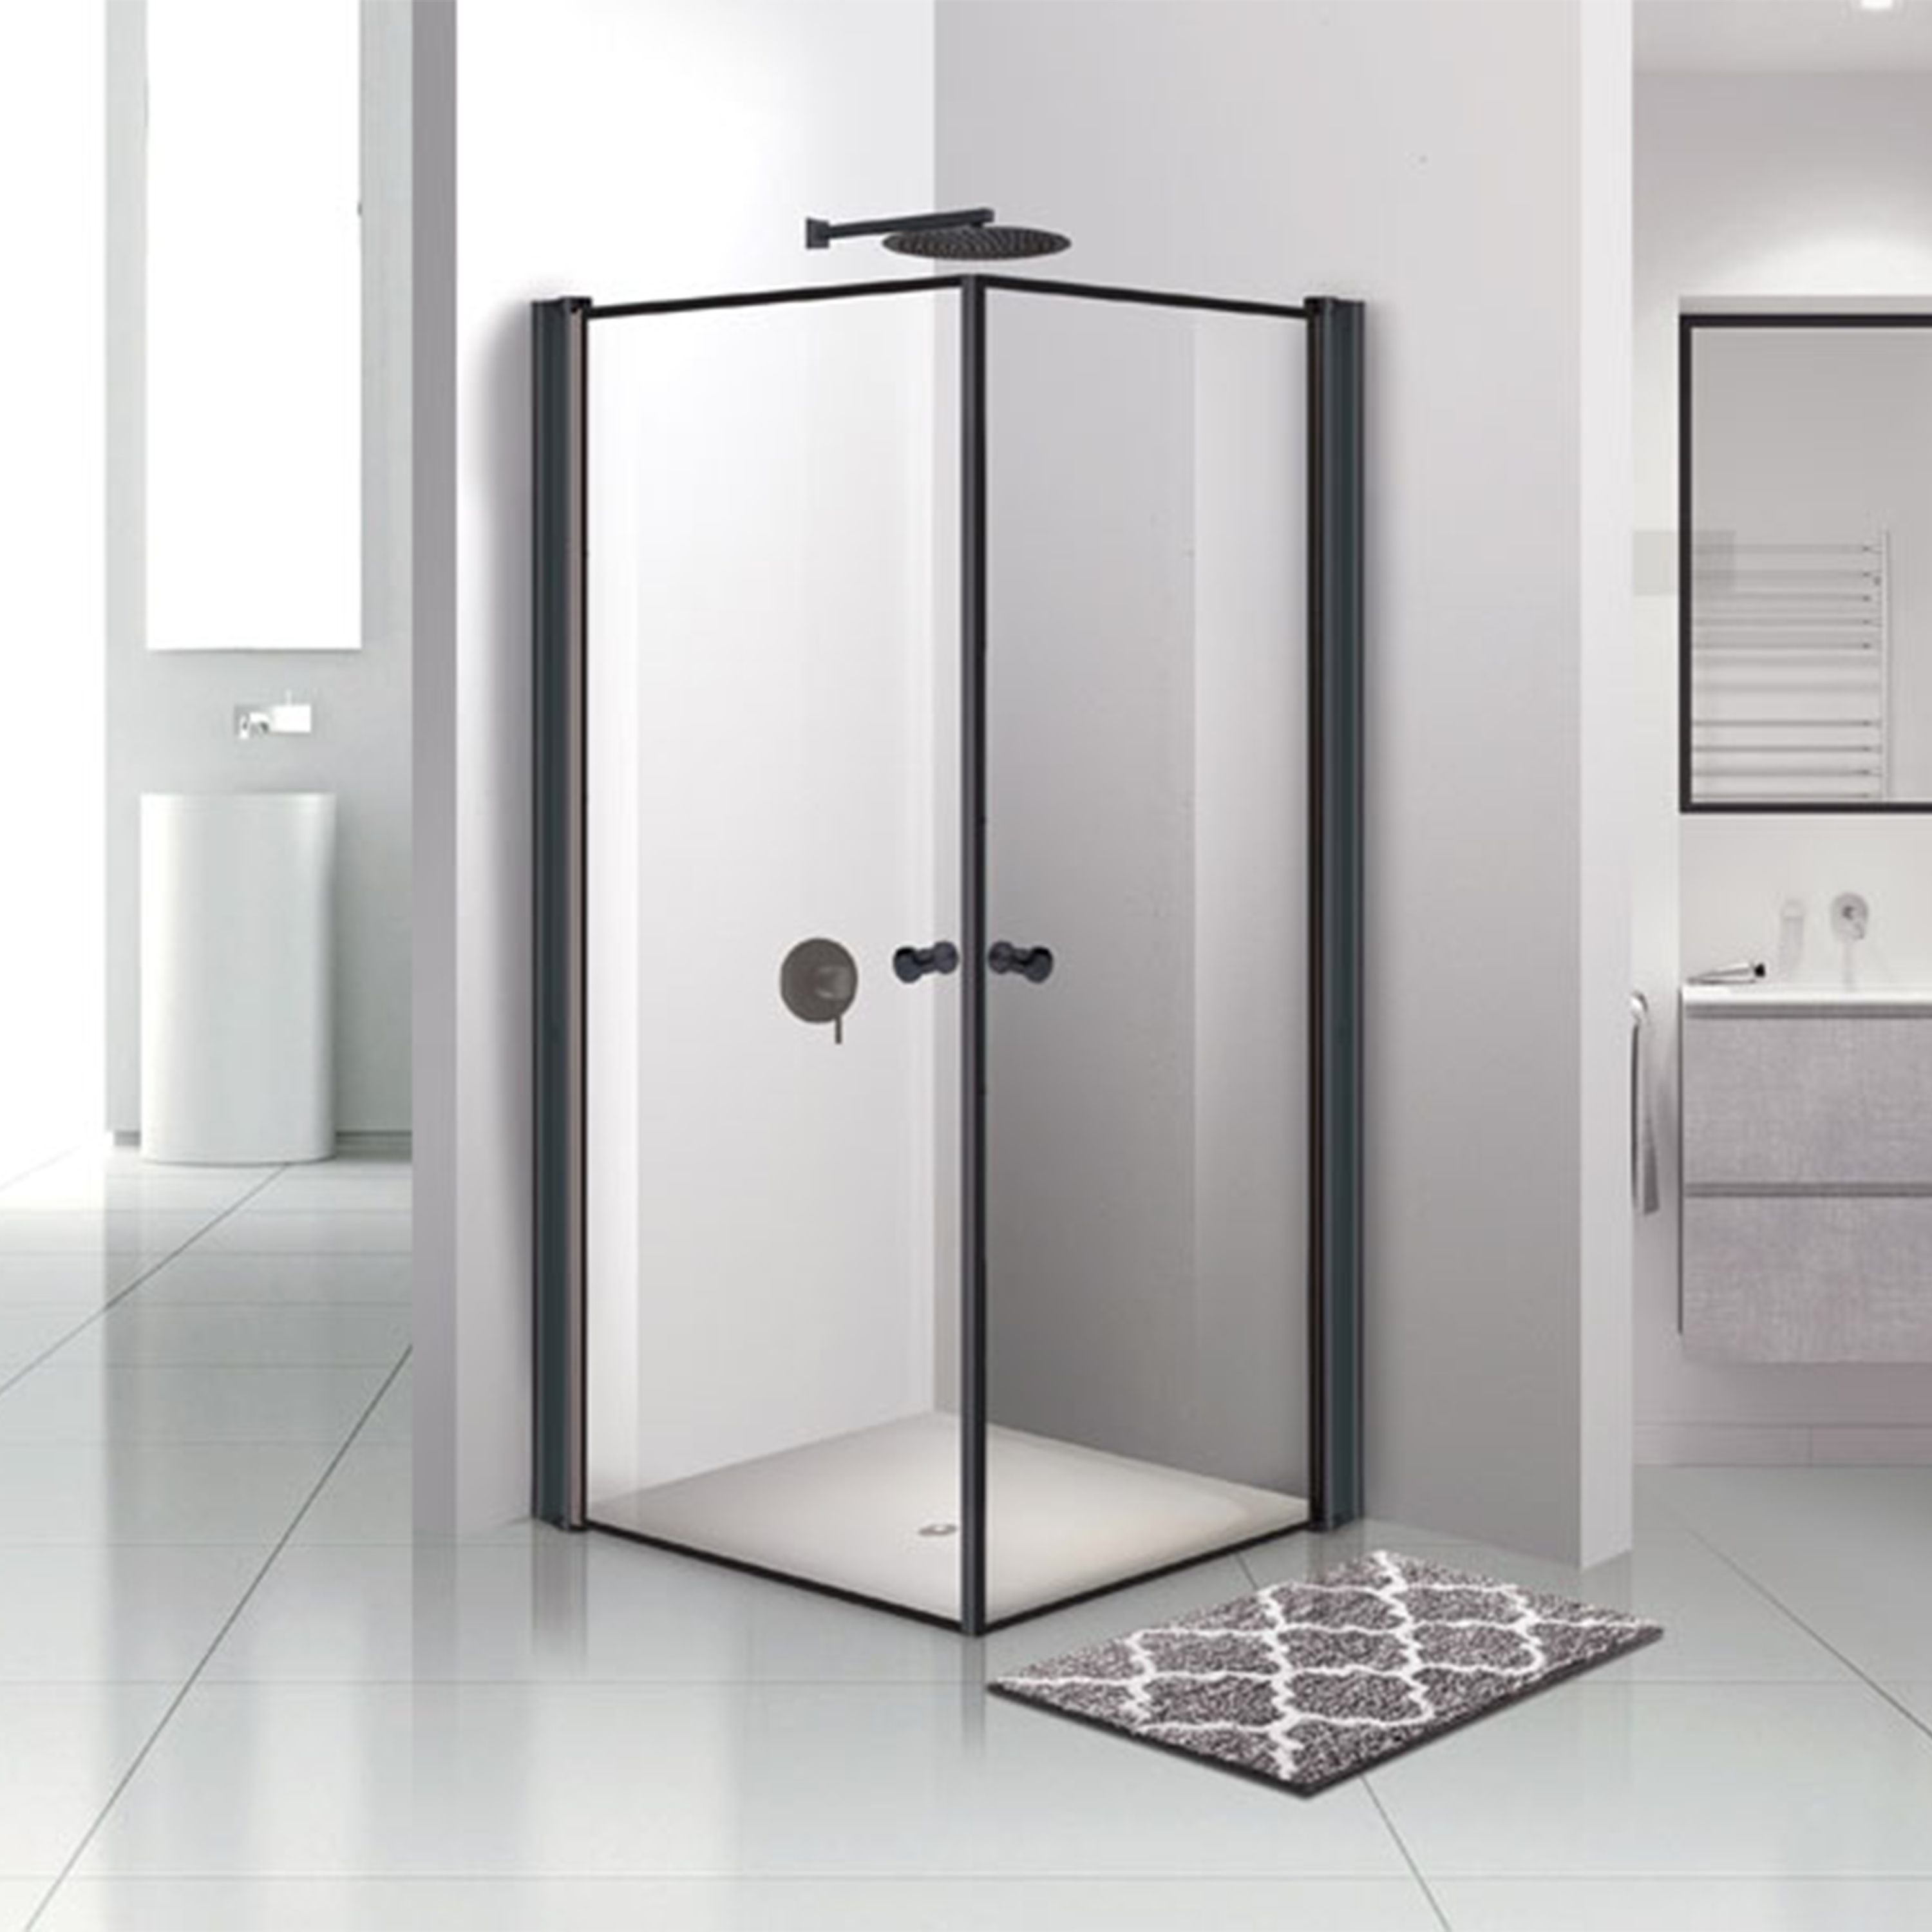 מקלחון פרזול זכוכית שקופה 87-90 ס"מ 405 Matina - צבע שחור אחריות לשלוש שנים ע"י היבואן הרשמי